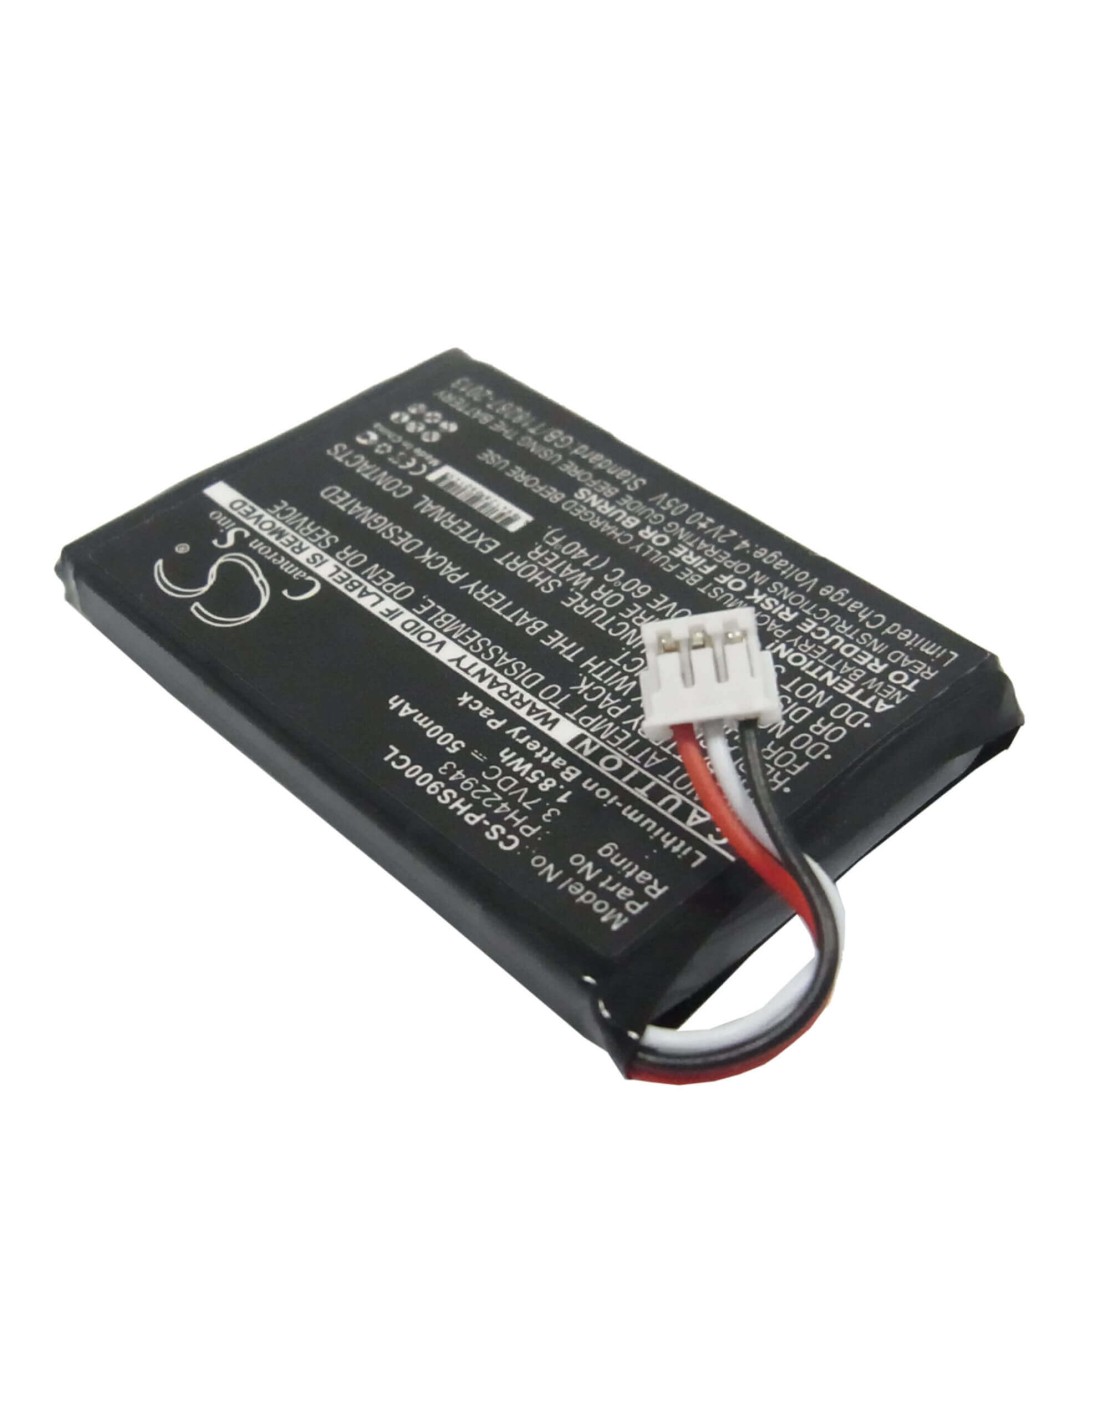 Battery for Philips, S9a, S9a/34, S9a/38, S9h 3.7V, 500mAh - 1.85Wh